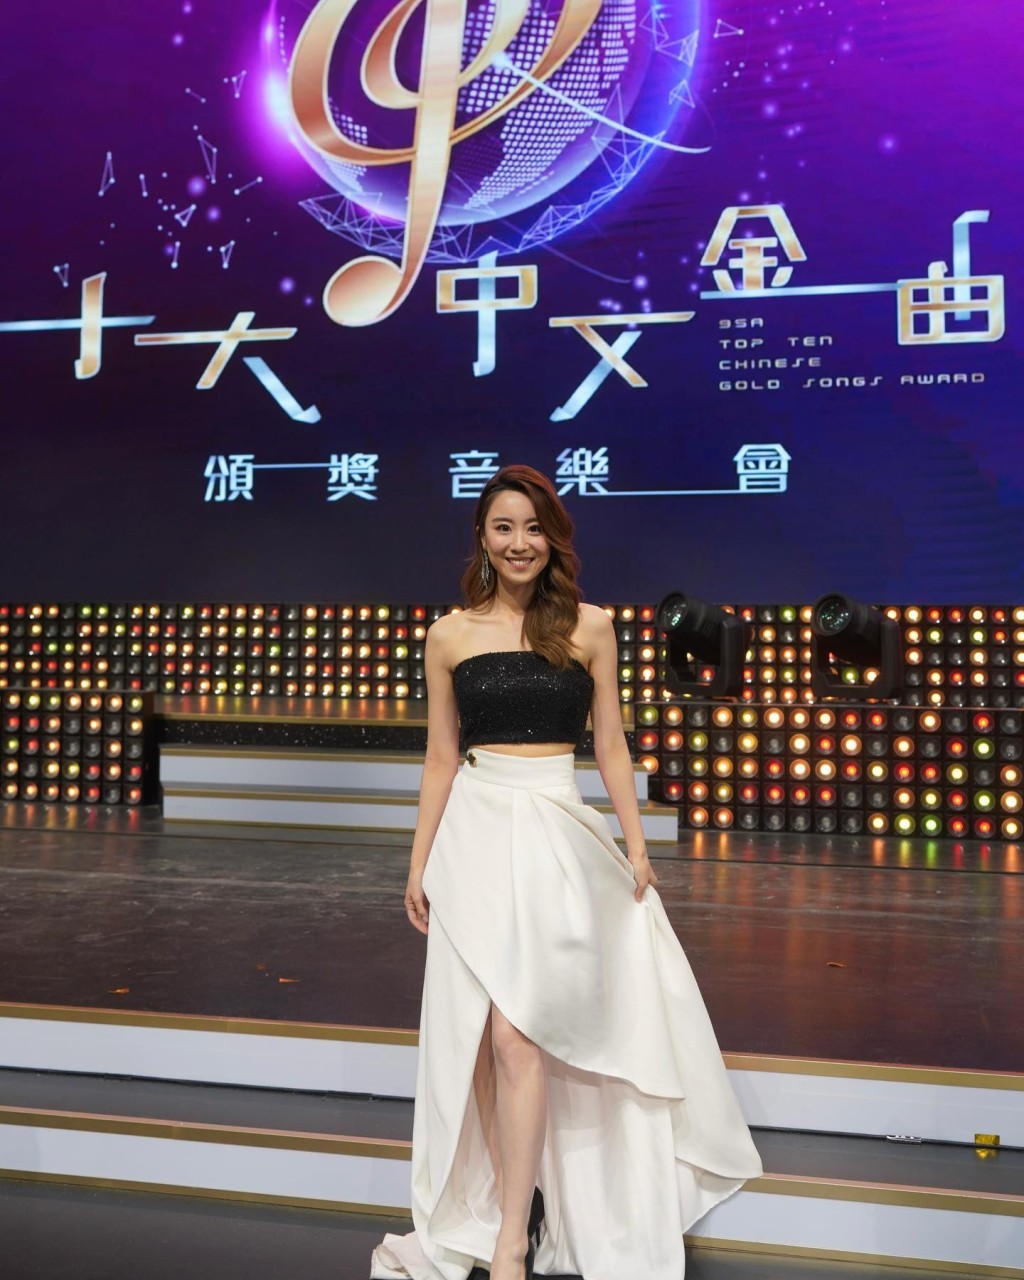 林静莉曾为《广播九十五周年十大中文金曲》担任主持。